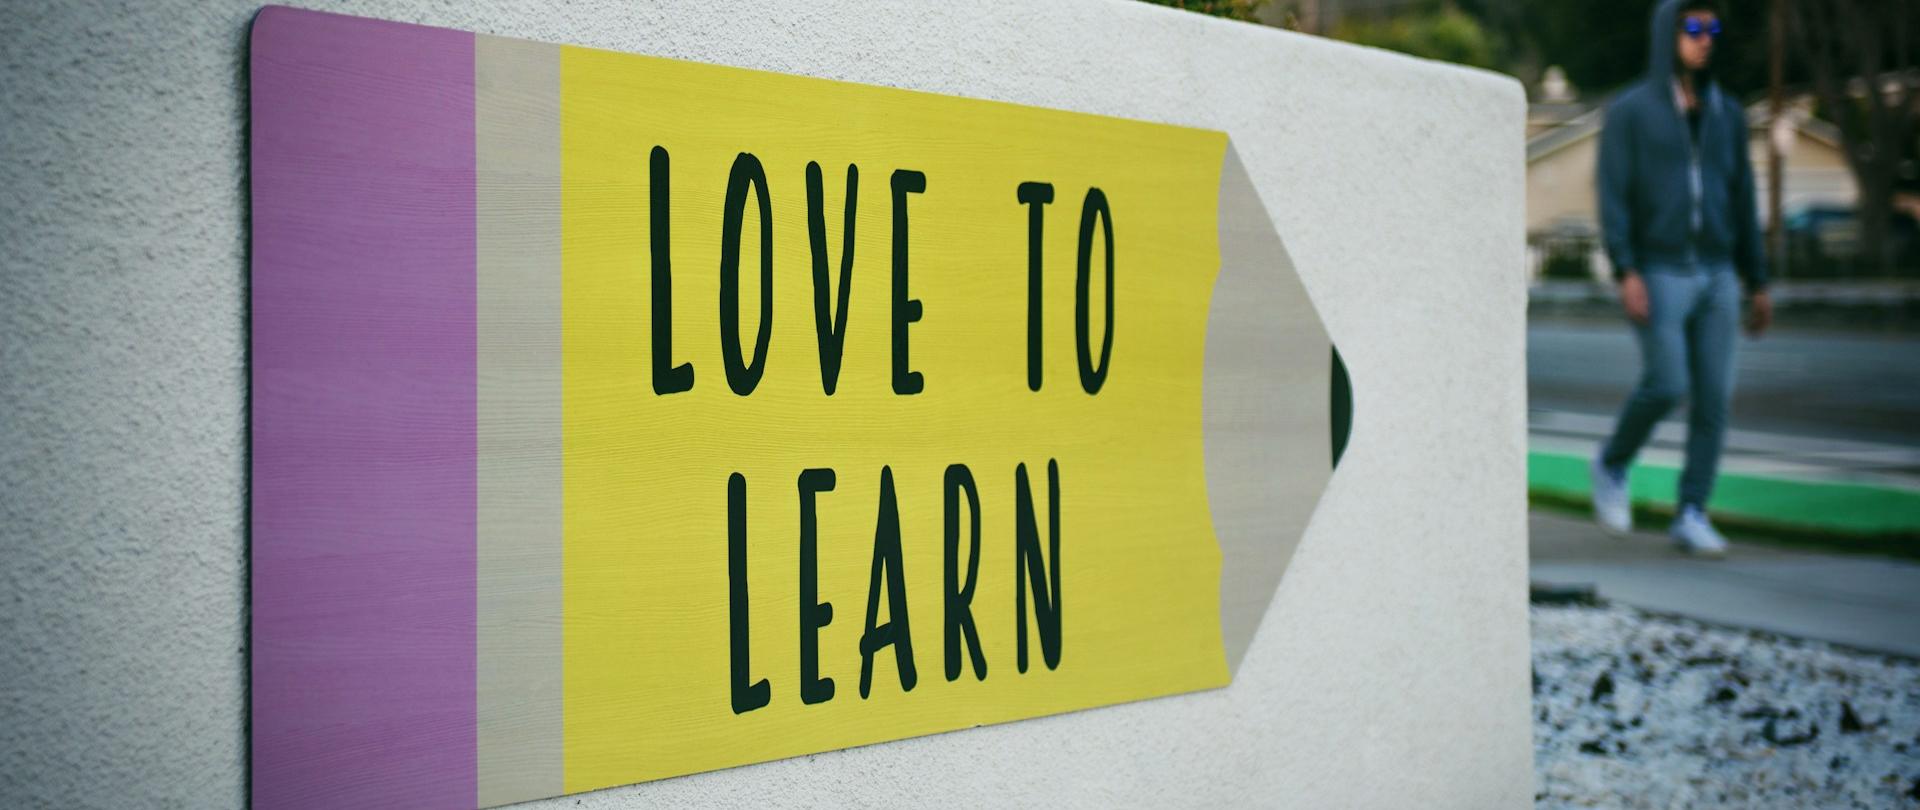 Szyld w kształcie kredki z napisem "LOVE TO LEARN"